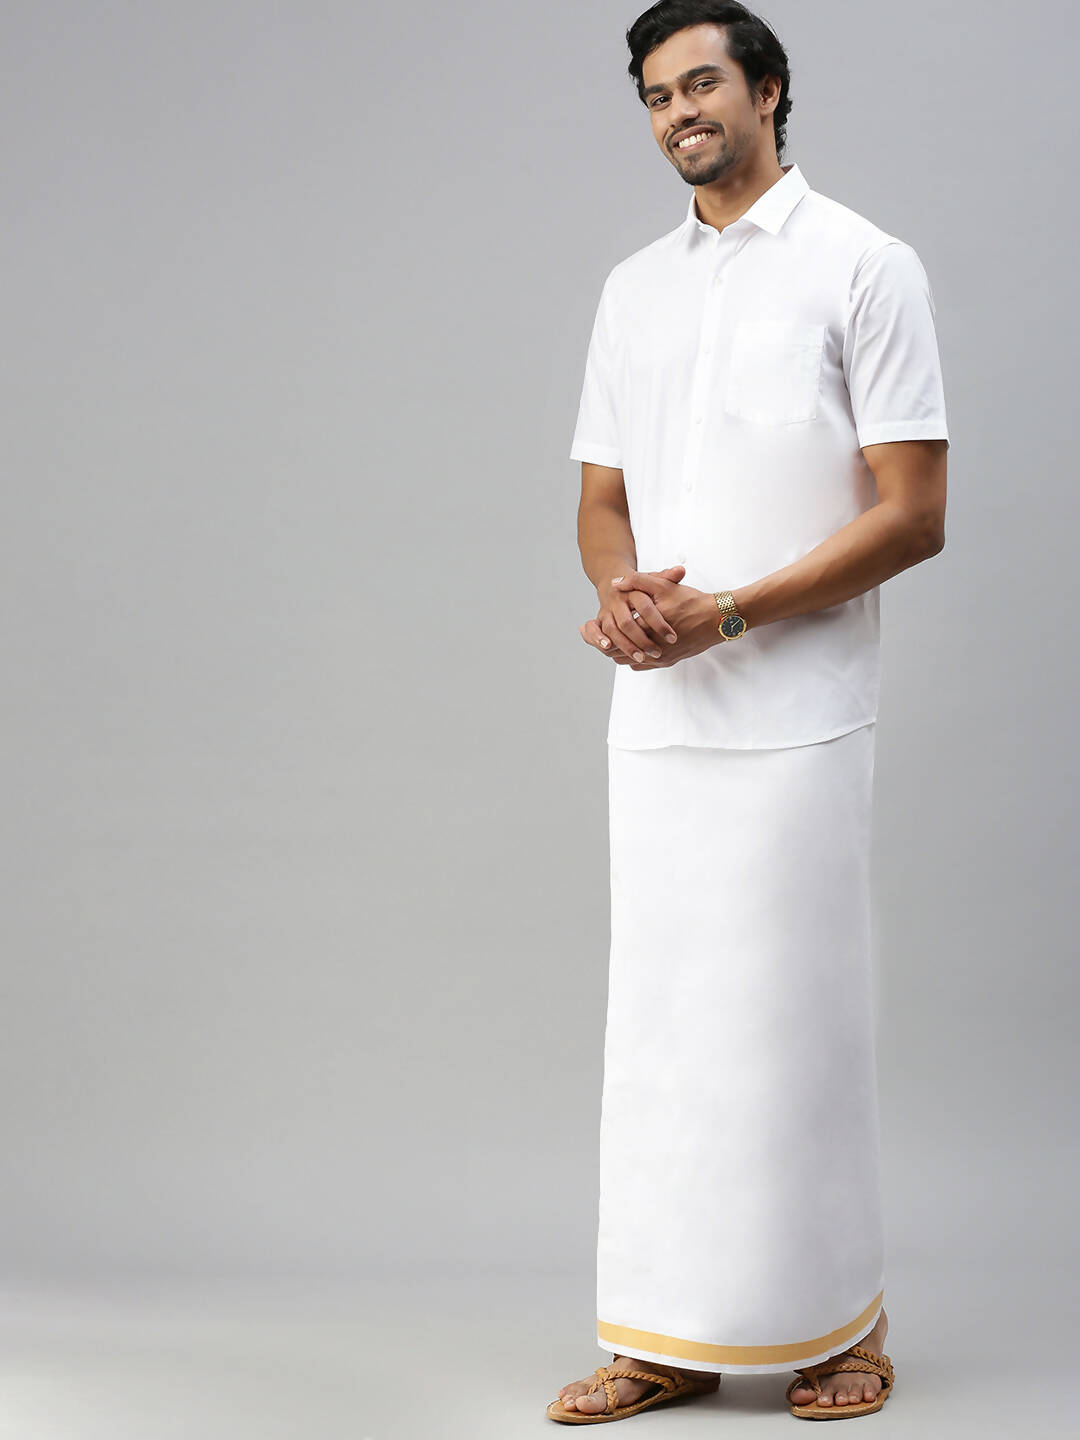 Buy Ramraj Cotton Mens Half Sleeve Formal 100% Cotton White Shirt